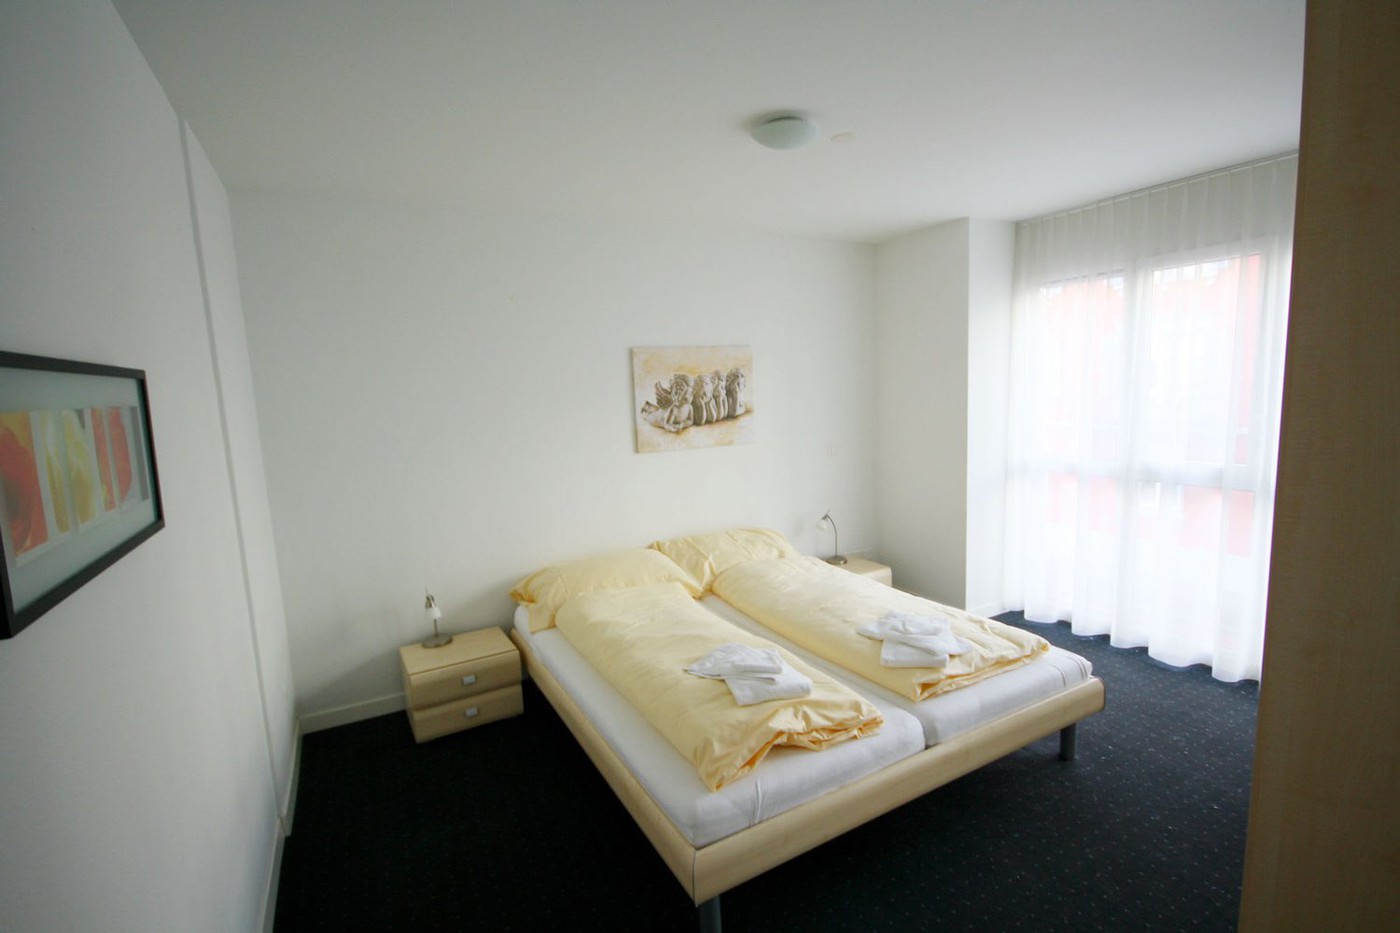 2 Zimmer-Möblierte Wohnung in Cham mieten - Flatfox